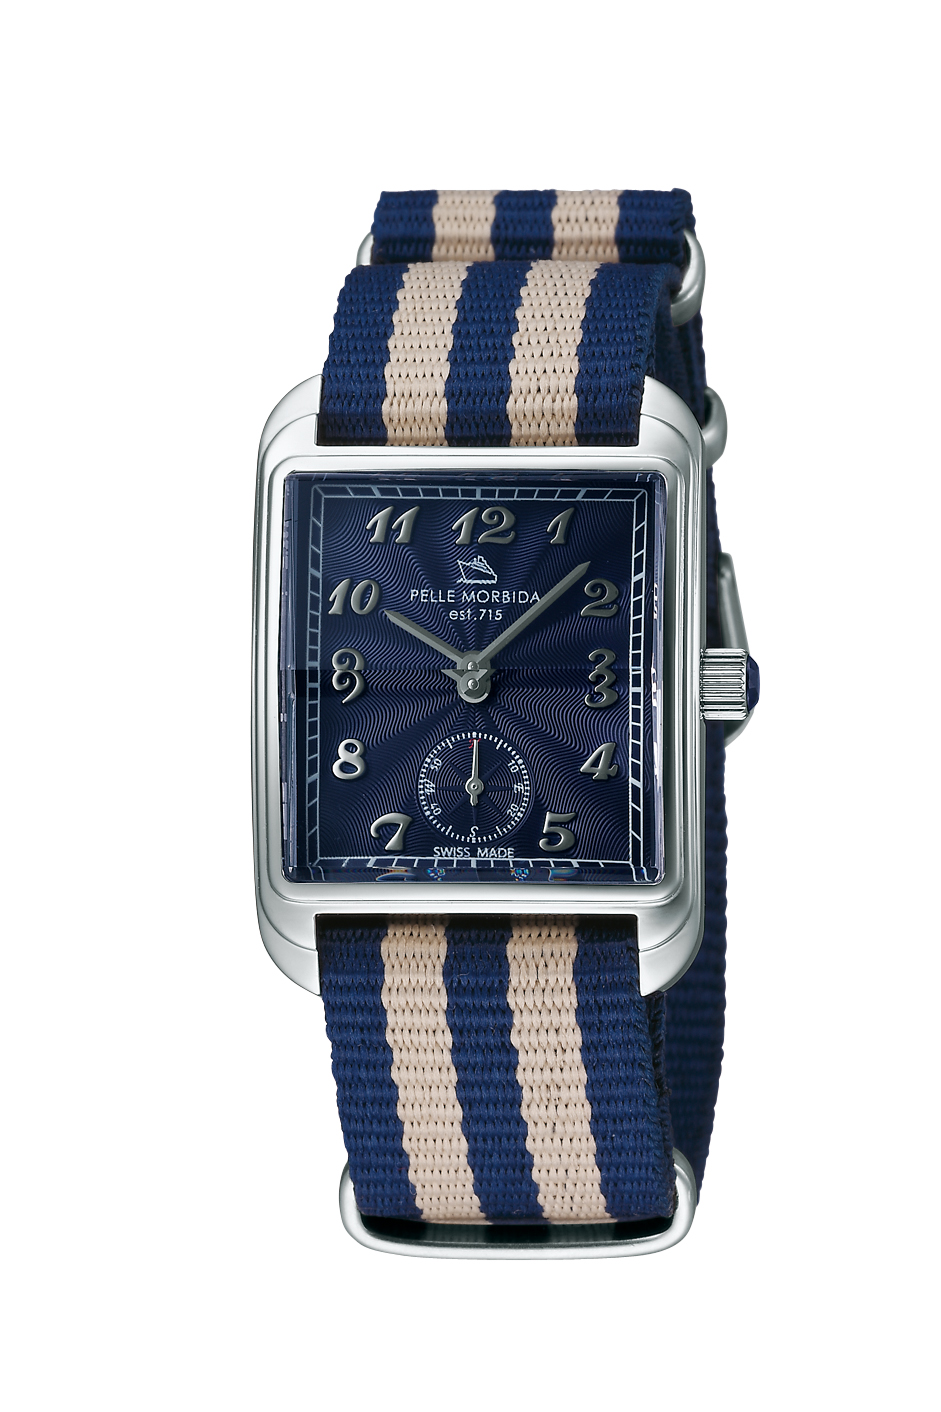 メンズのブランド腕時計ですペッレモルビダ PELLE MORBIDA est.715 腕時計